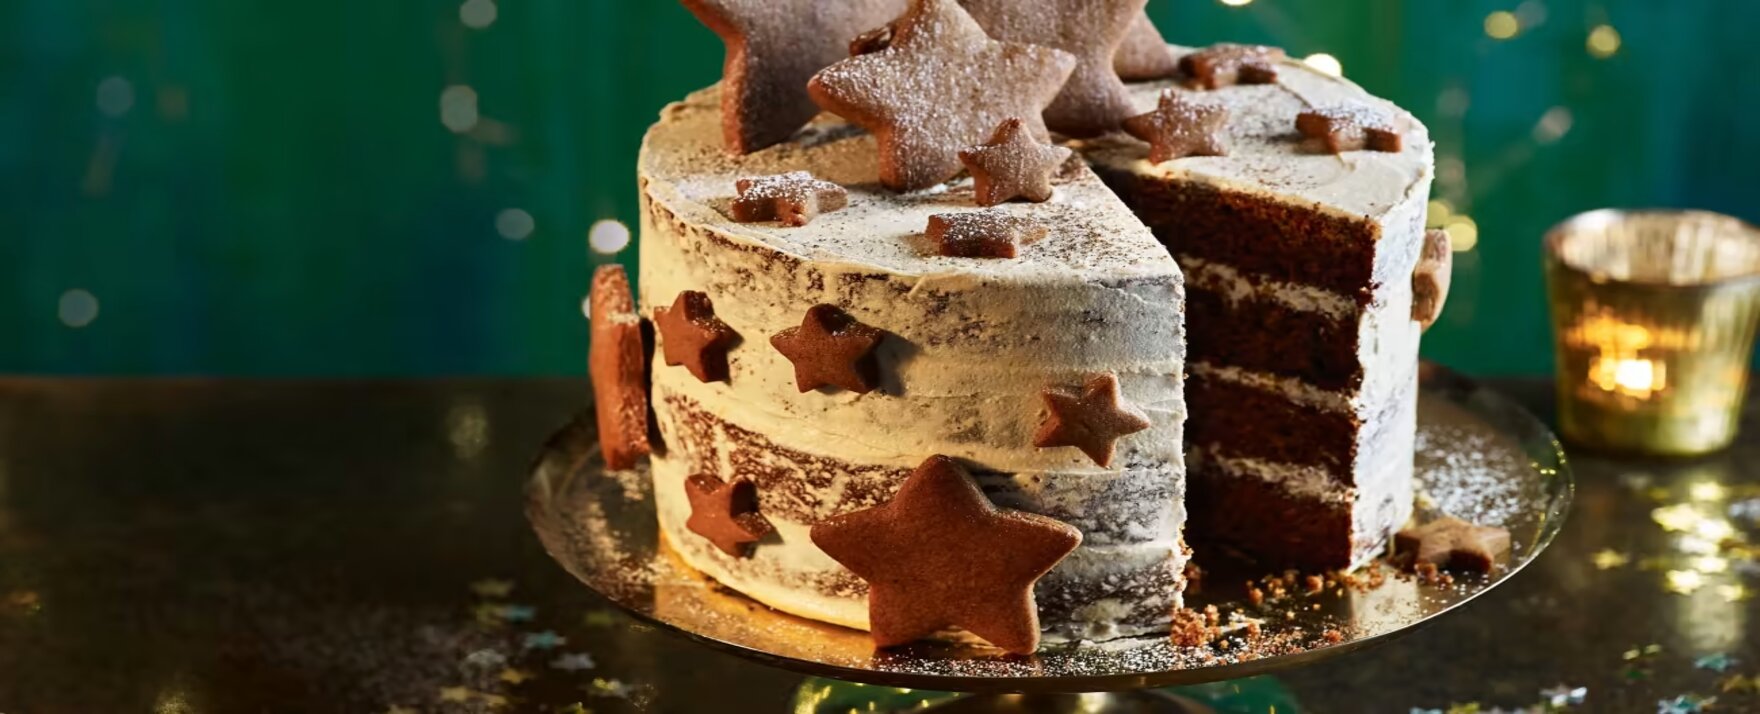 Gingerbread latte Christmas cake header.jpg